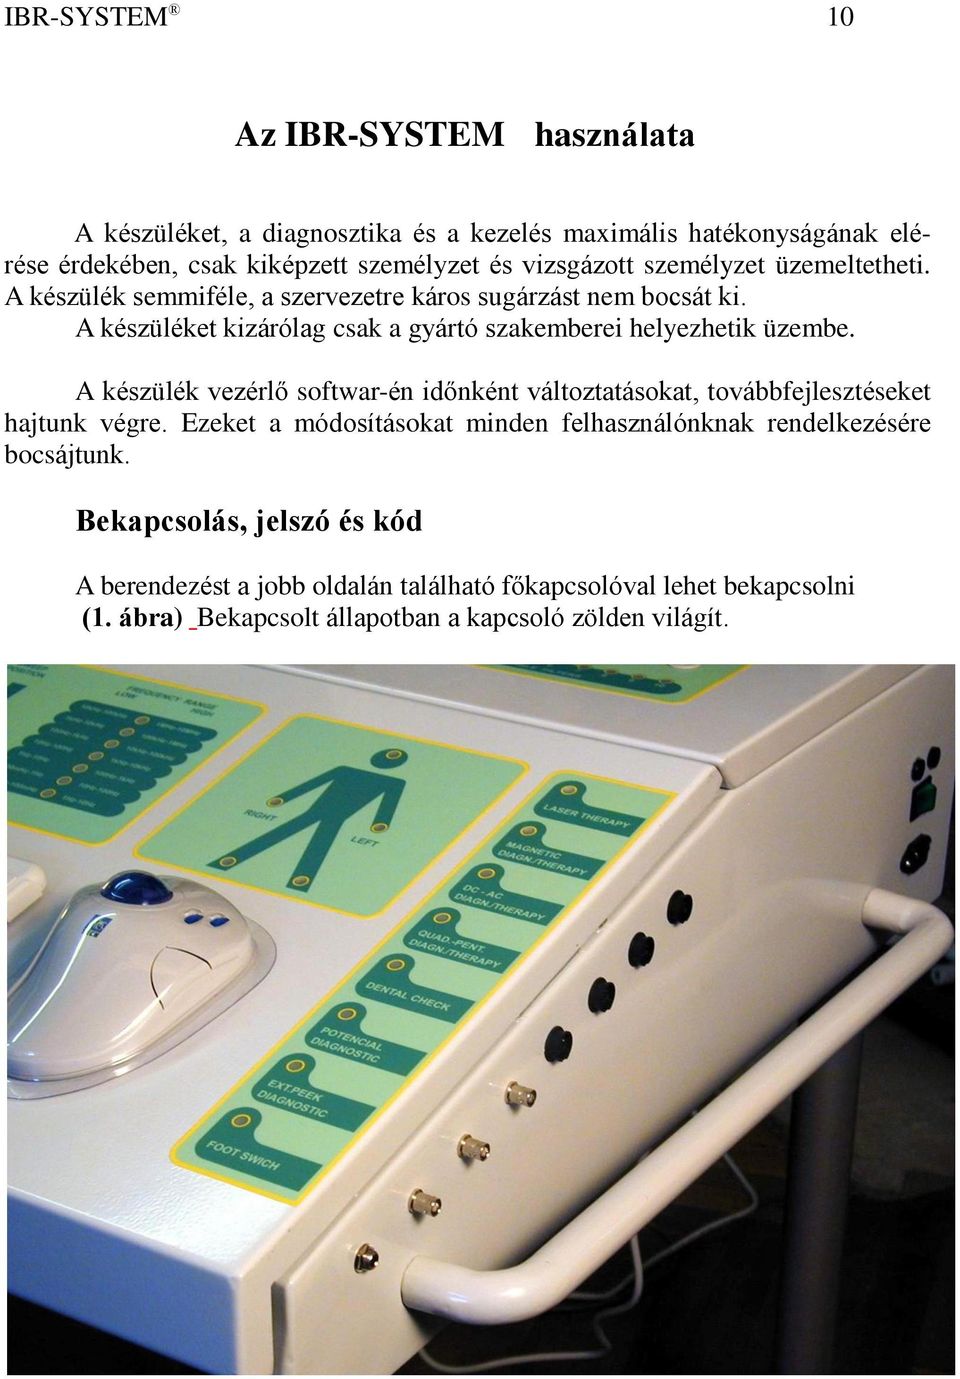 IBR-SYSTEM Integrált Biológiai Szabályozó - PDF Free Download